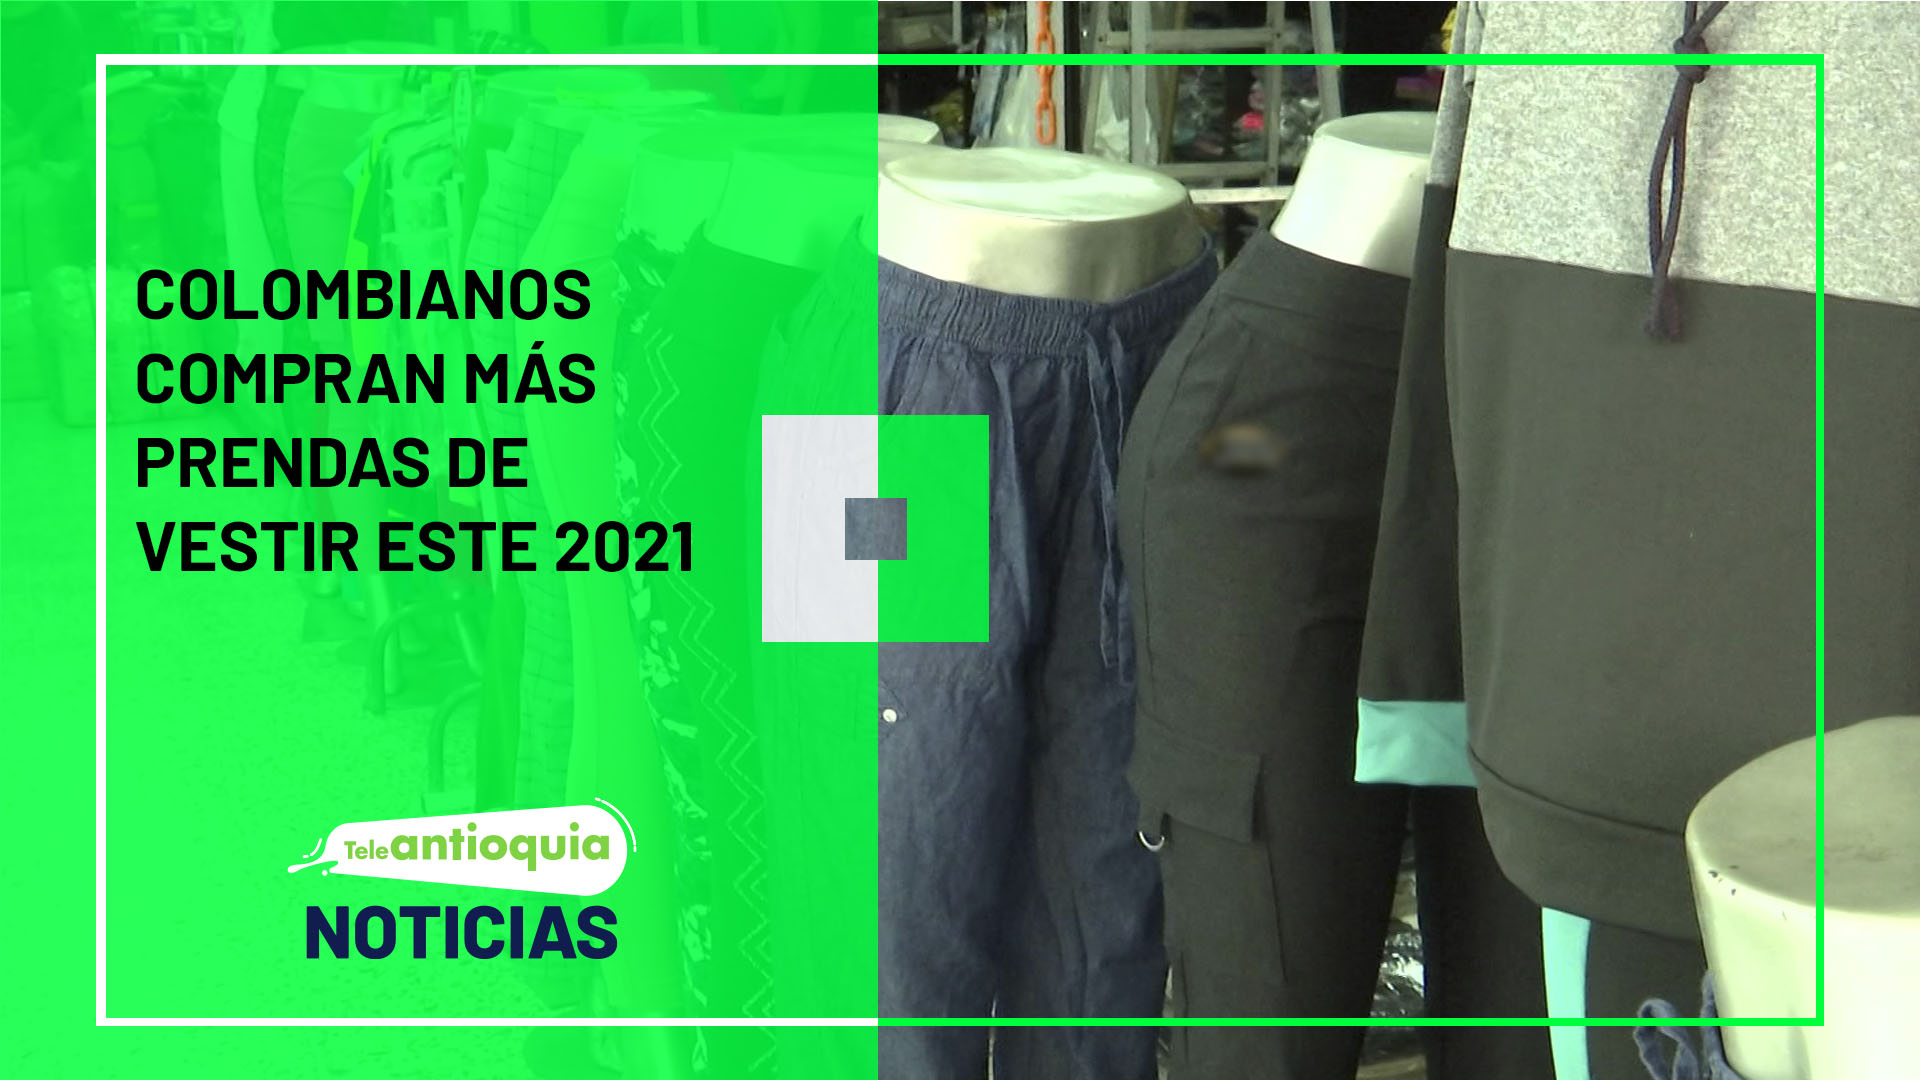 Colombianos compran más prendas de vestir este 2021